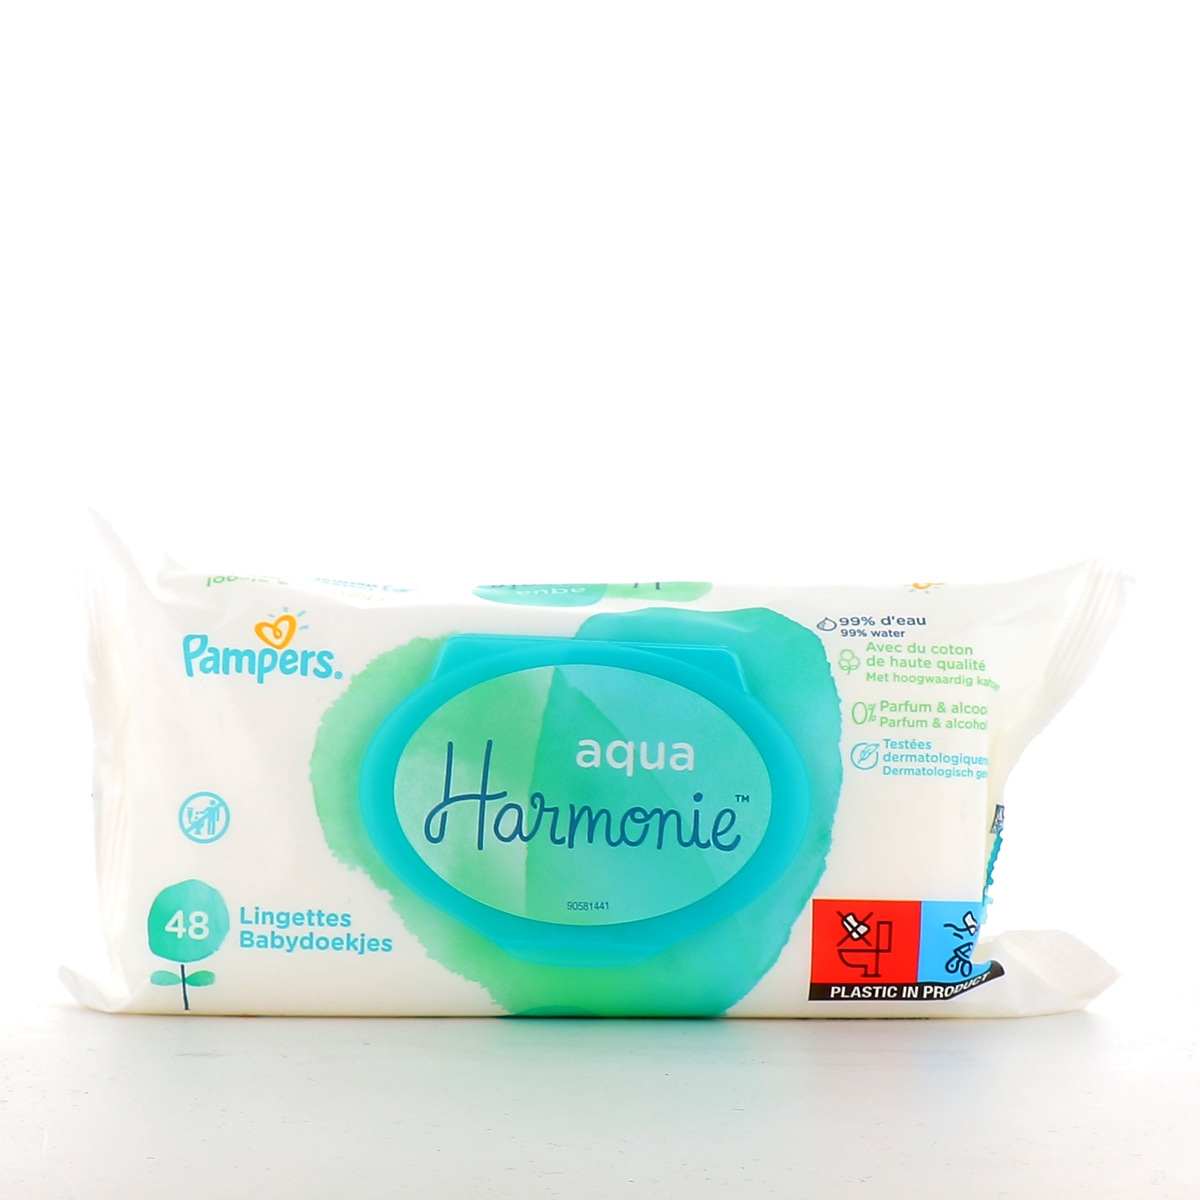 Pampers Aqua Harmonie Lingettes à l'eau - Toilette et change de bébé